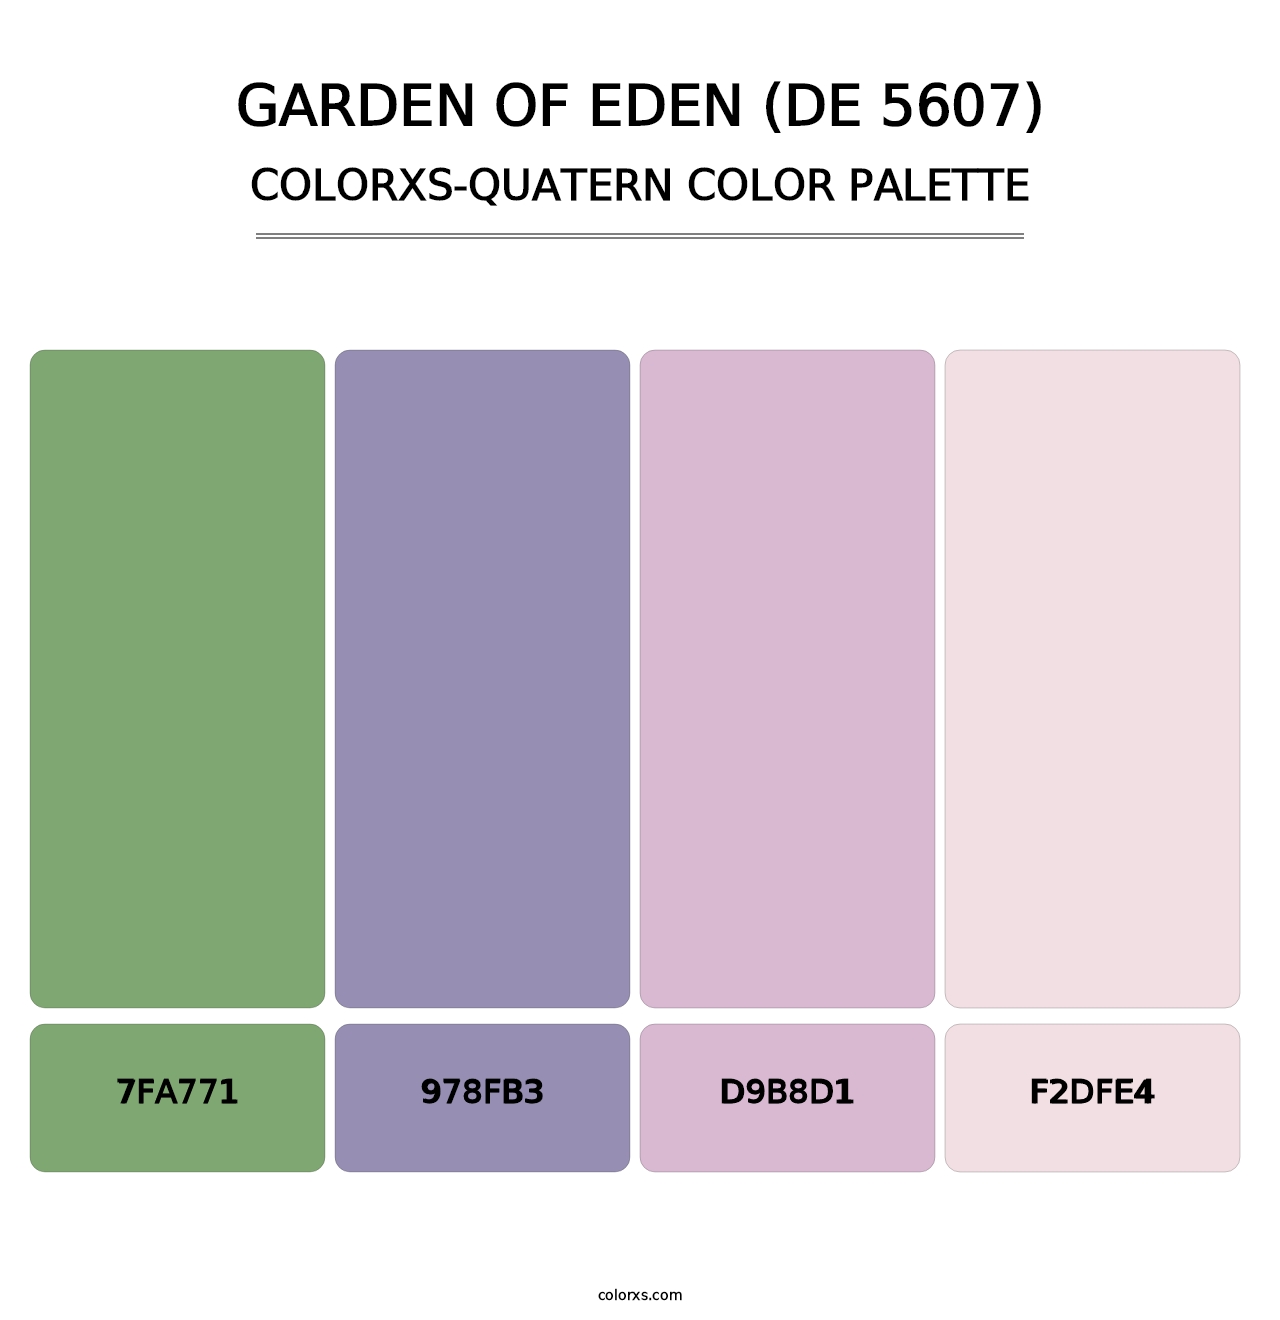 Garden of Eden (DE 5607) - Colorxs Quatern Palette